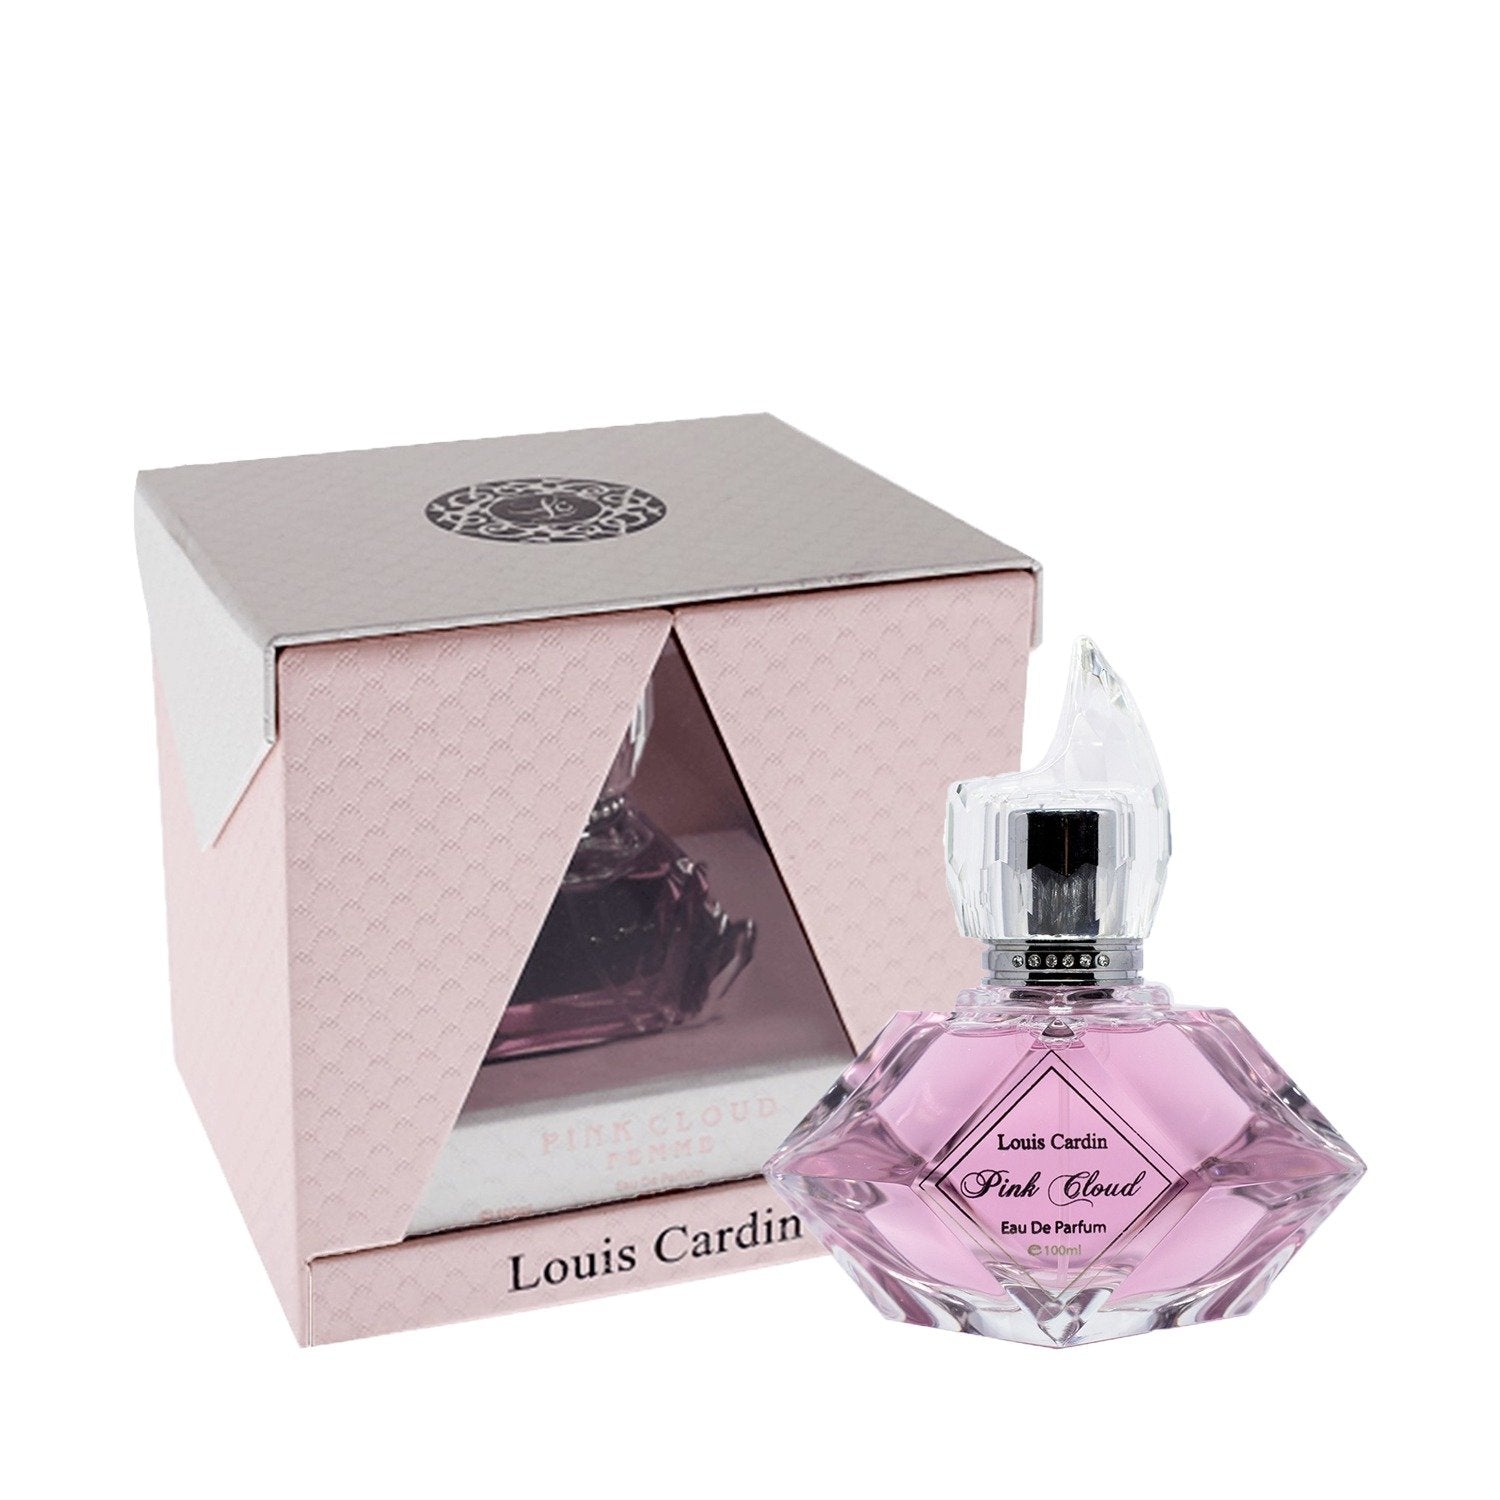 Sacred Eau De Parfum By Louis Cardin 